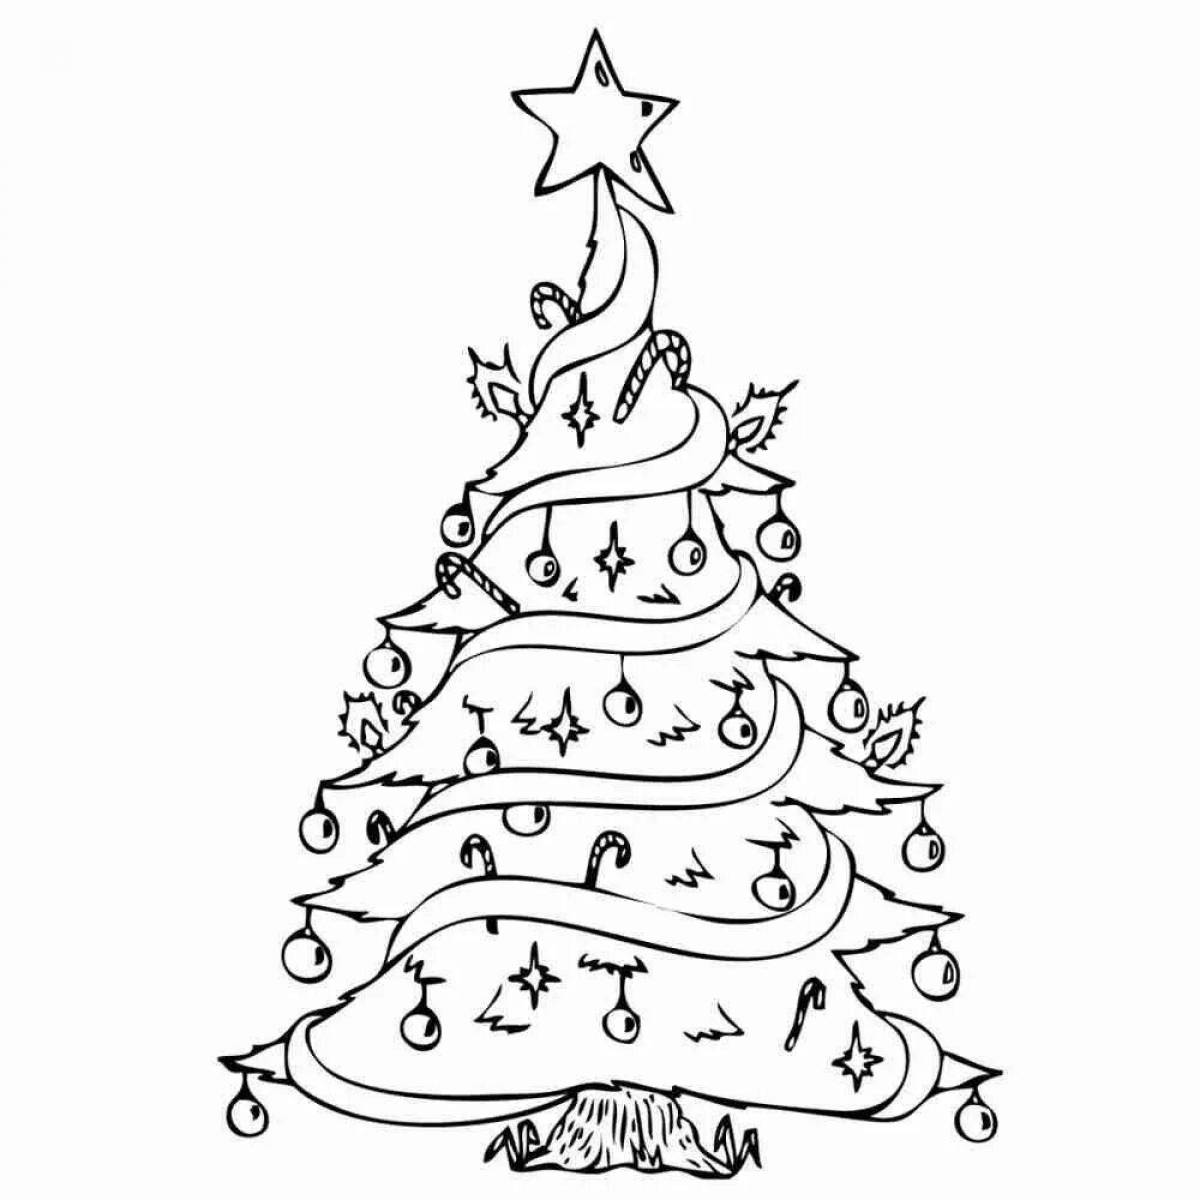 Playful Christmas tree drawing